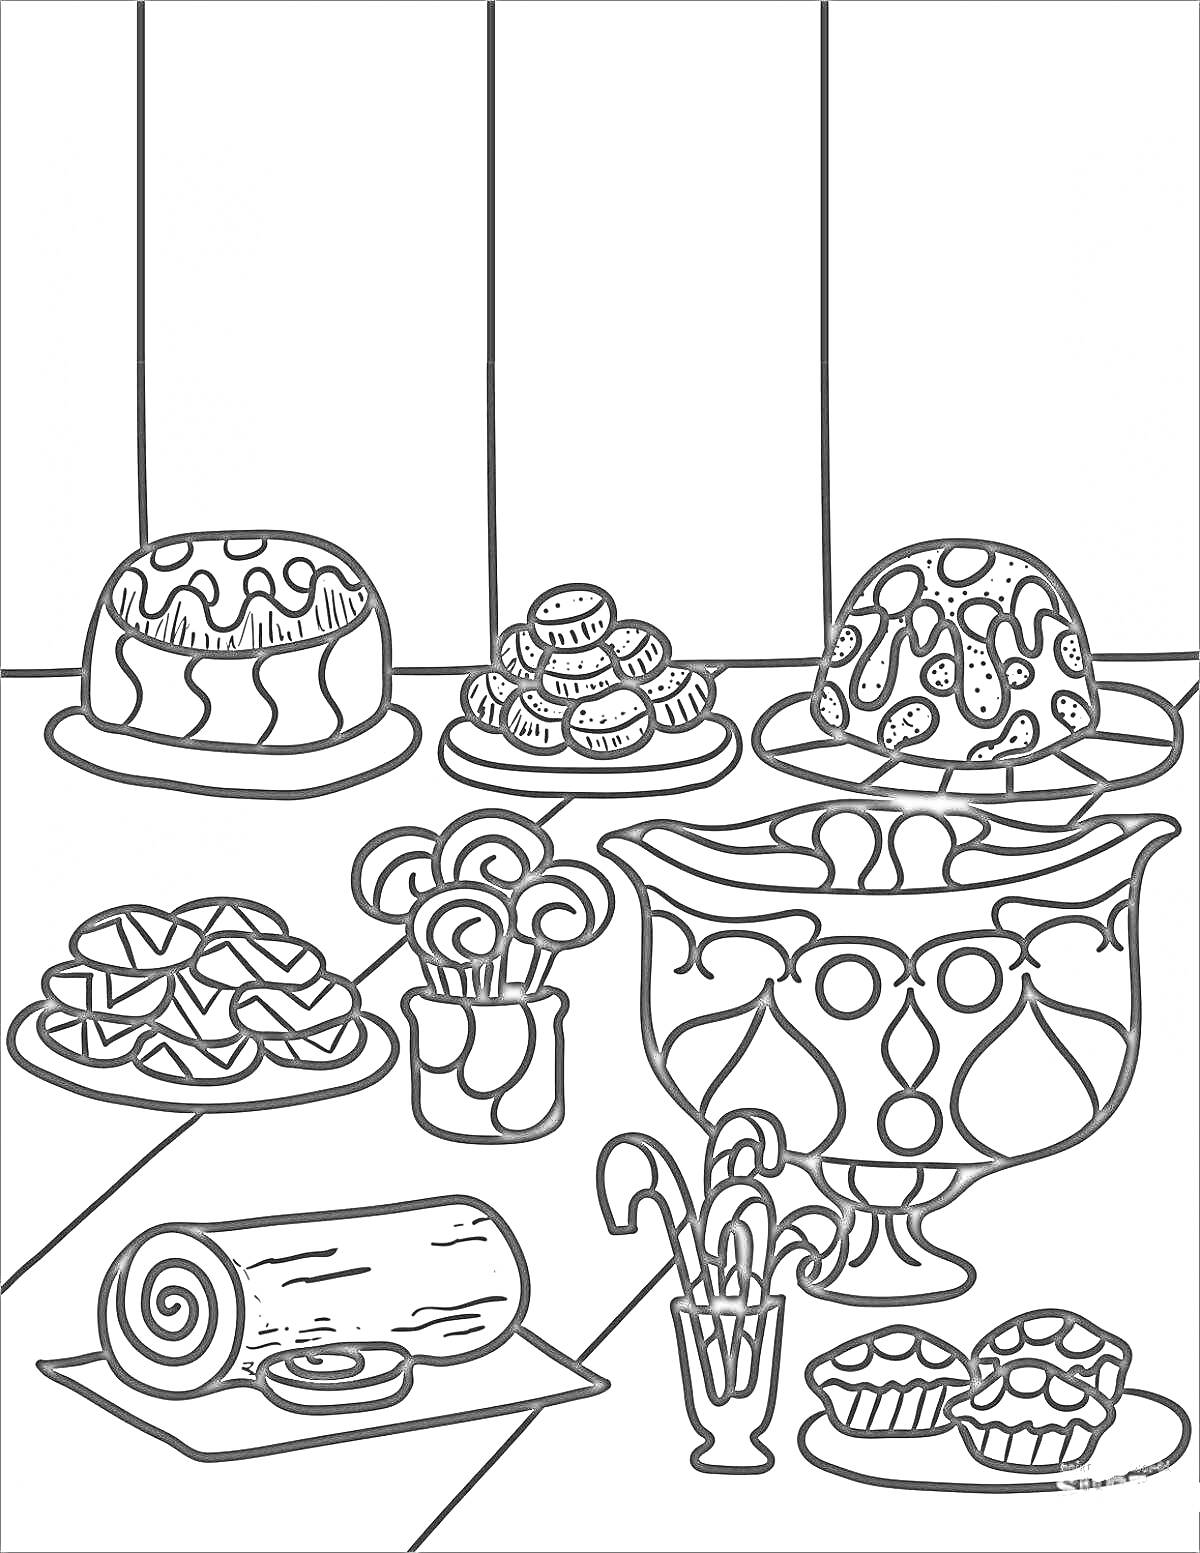 Раскраска Пудинги, печенье, леденцы, круассаны, рождественский рулет, конфеты и кексы на столе